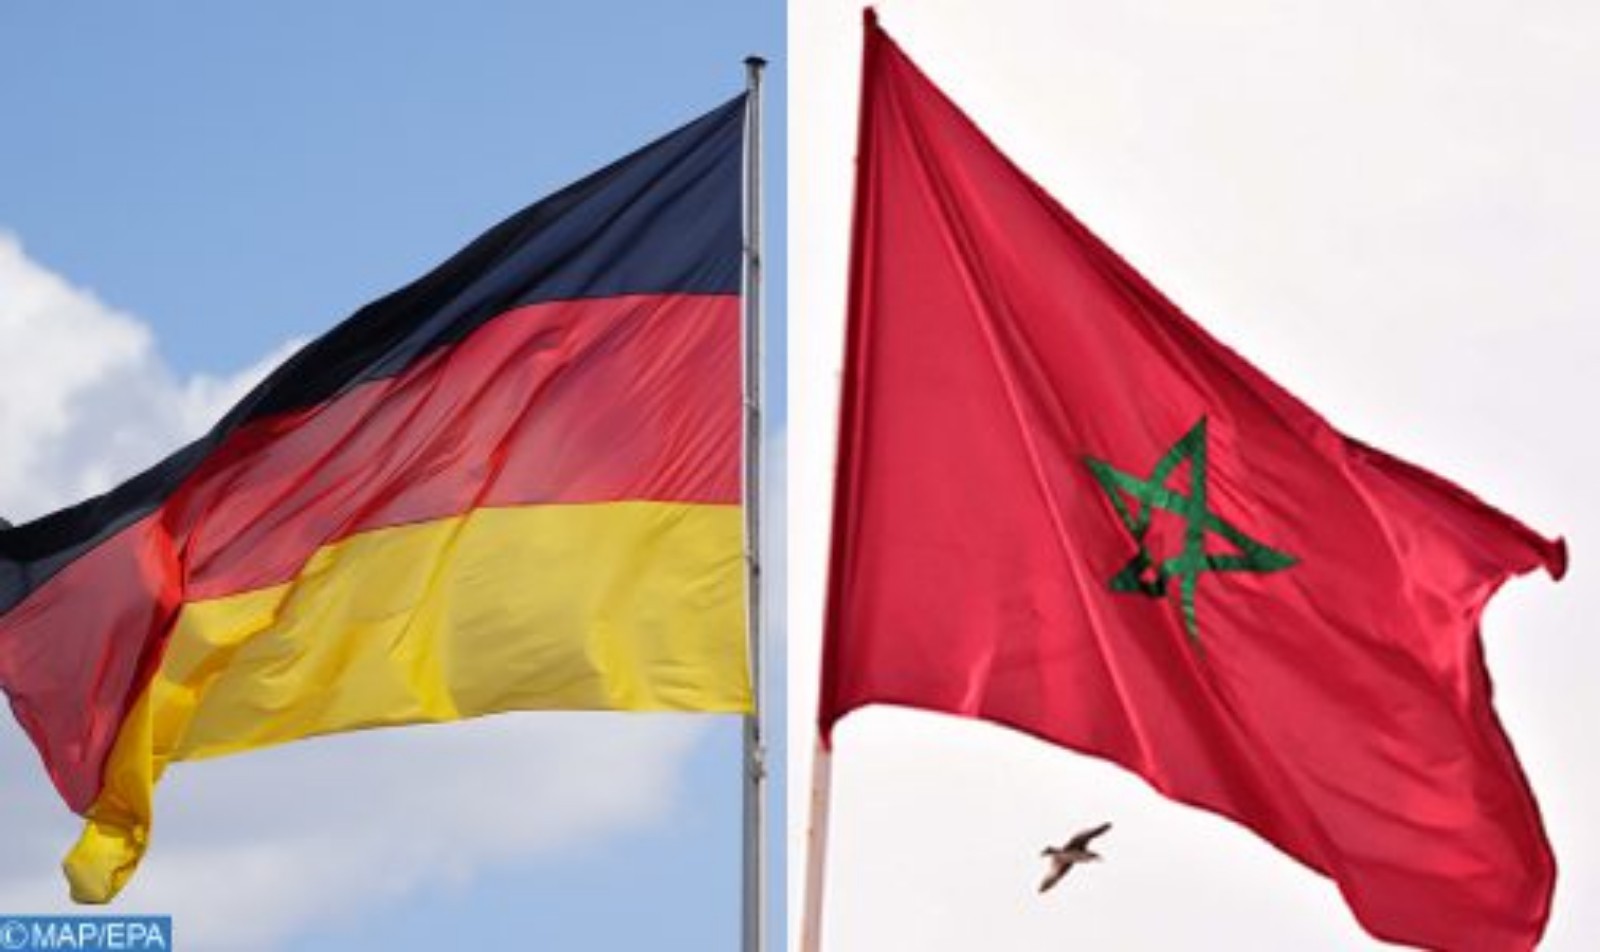 المغرب-ألمانيا.. اتفاق على تعزيز التعاون في ميادين مكافحة الإرهاب والتطرف ومختلف صور الجريمة المنظمة العابرة للحدود